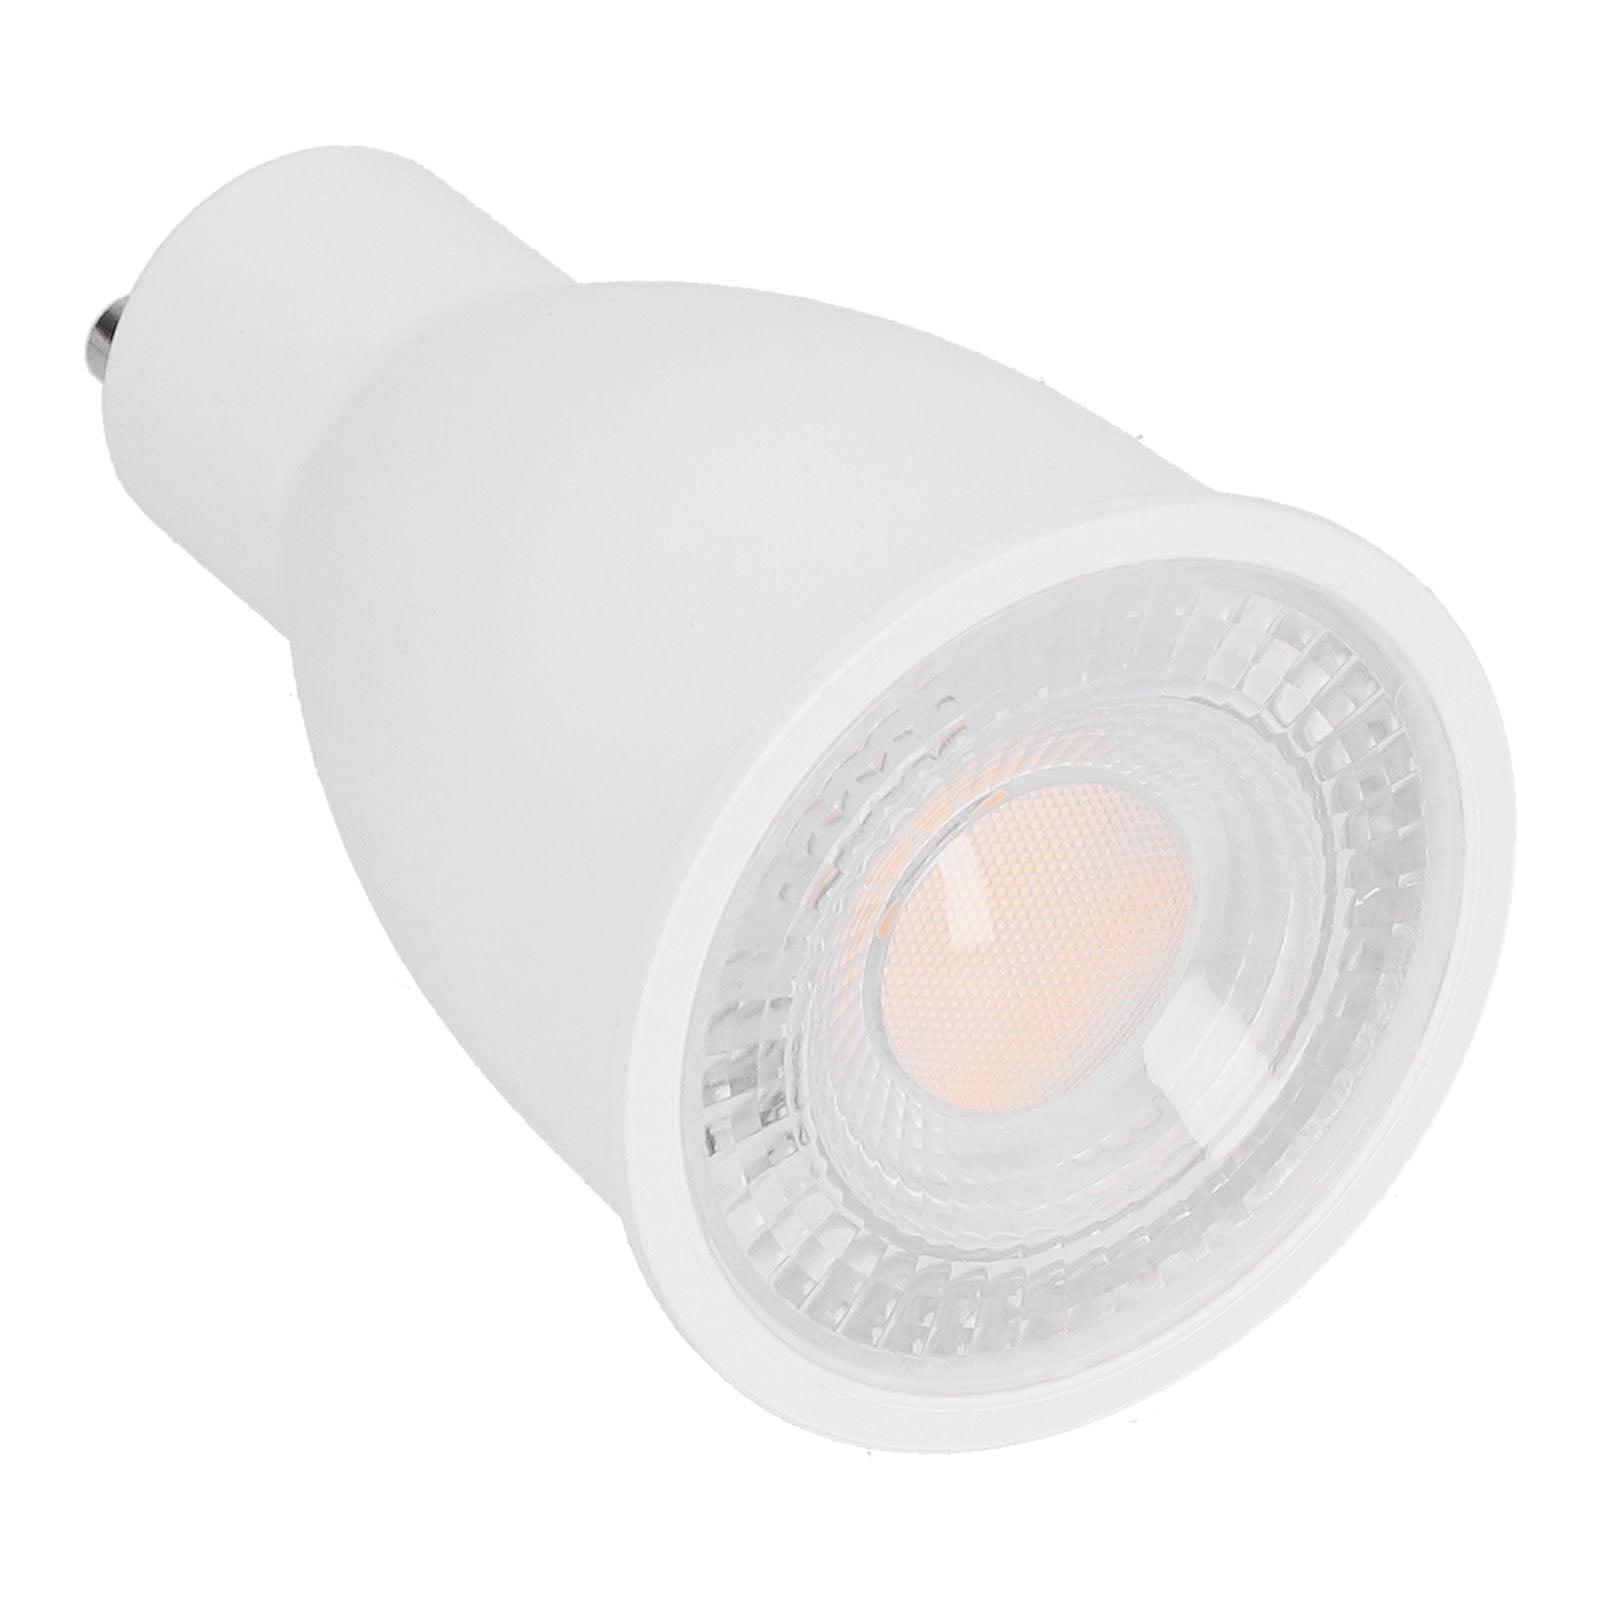 Noodlottig Outlook Hertog LED , Light Bulb GU10 15W 1650lm For Home For Office White Light -  Walmart.com